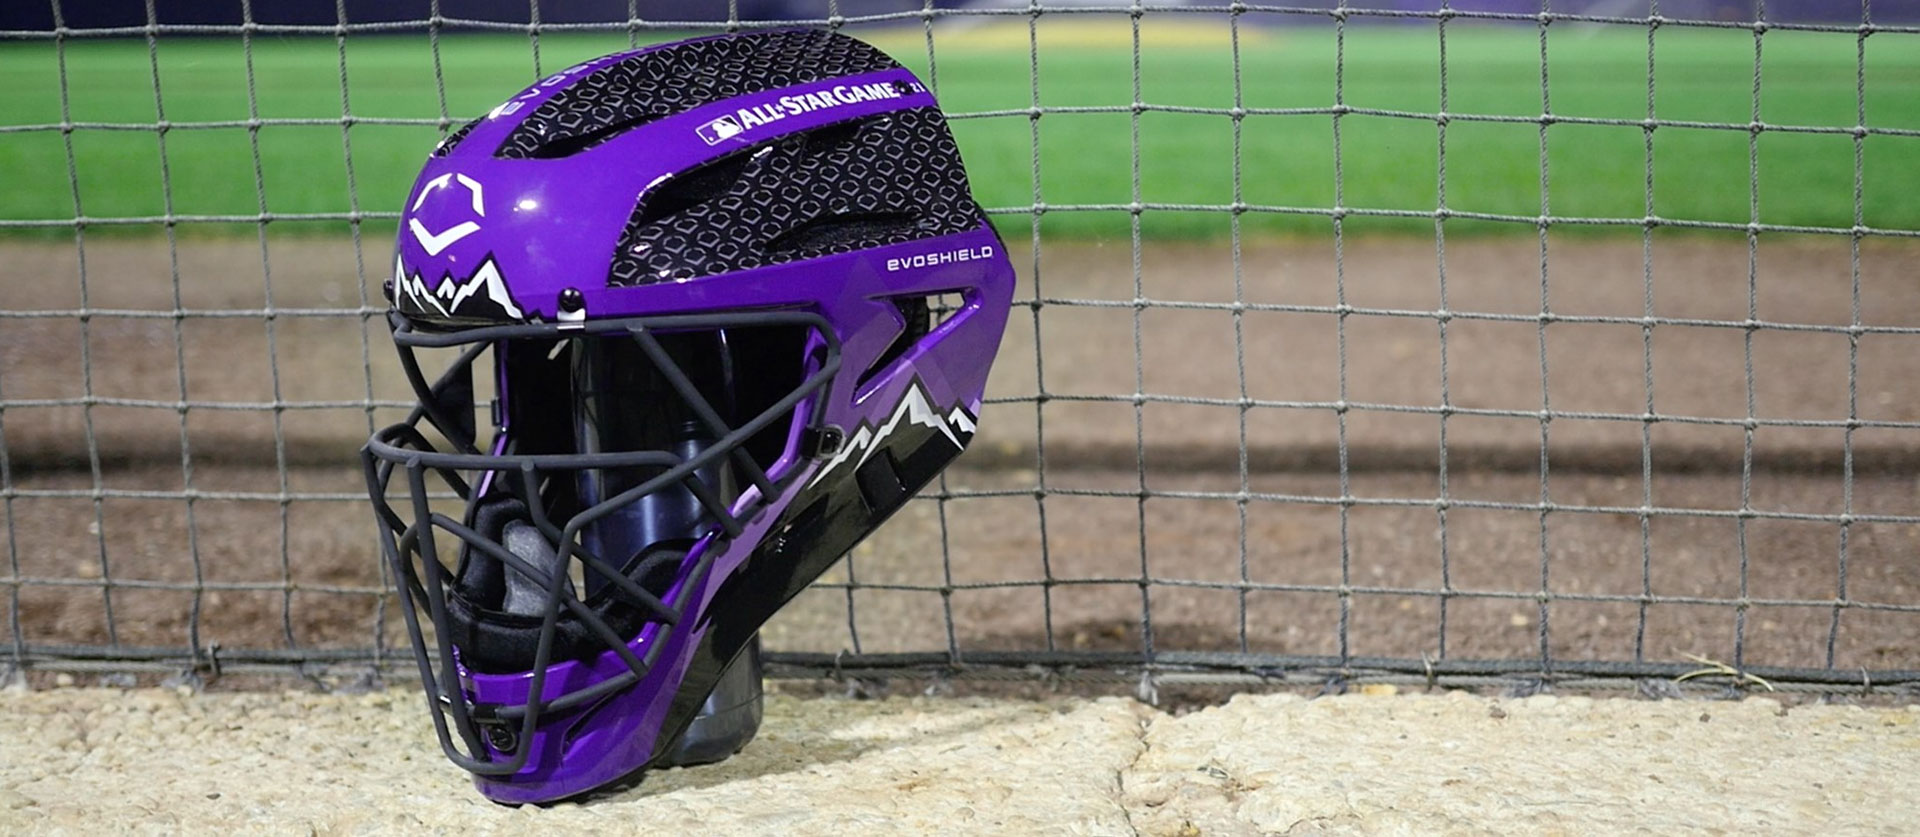 Wilson Catcher Helmet Design - MLB All-Star Game